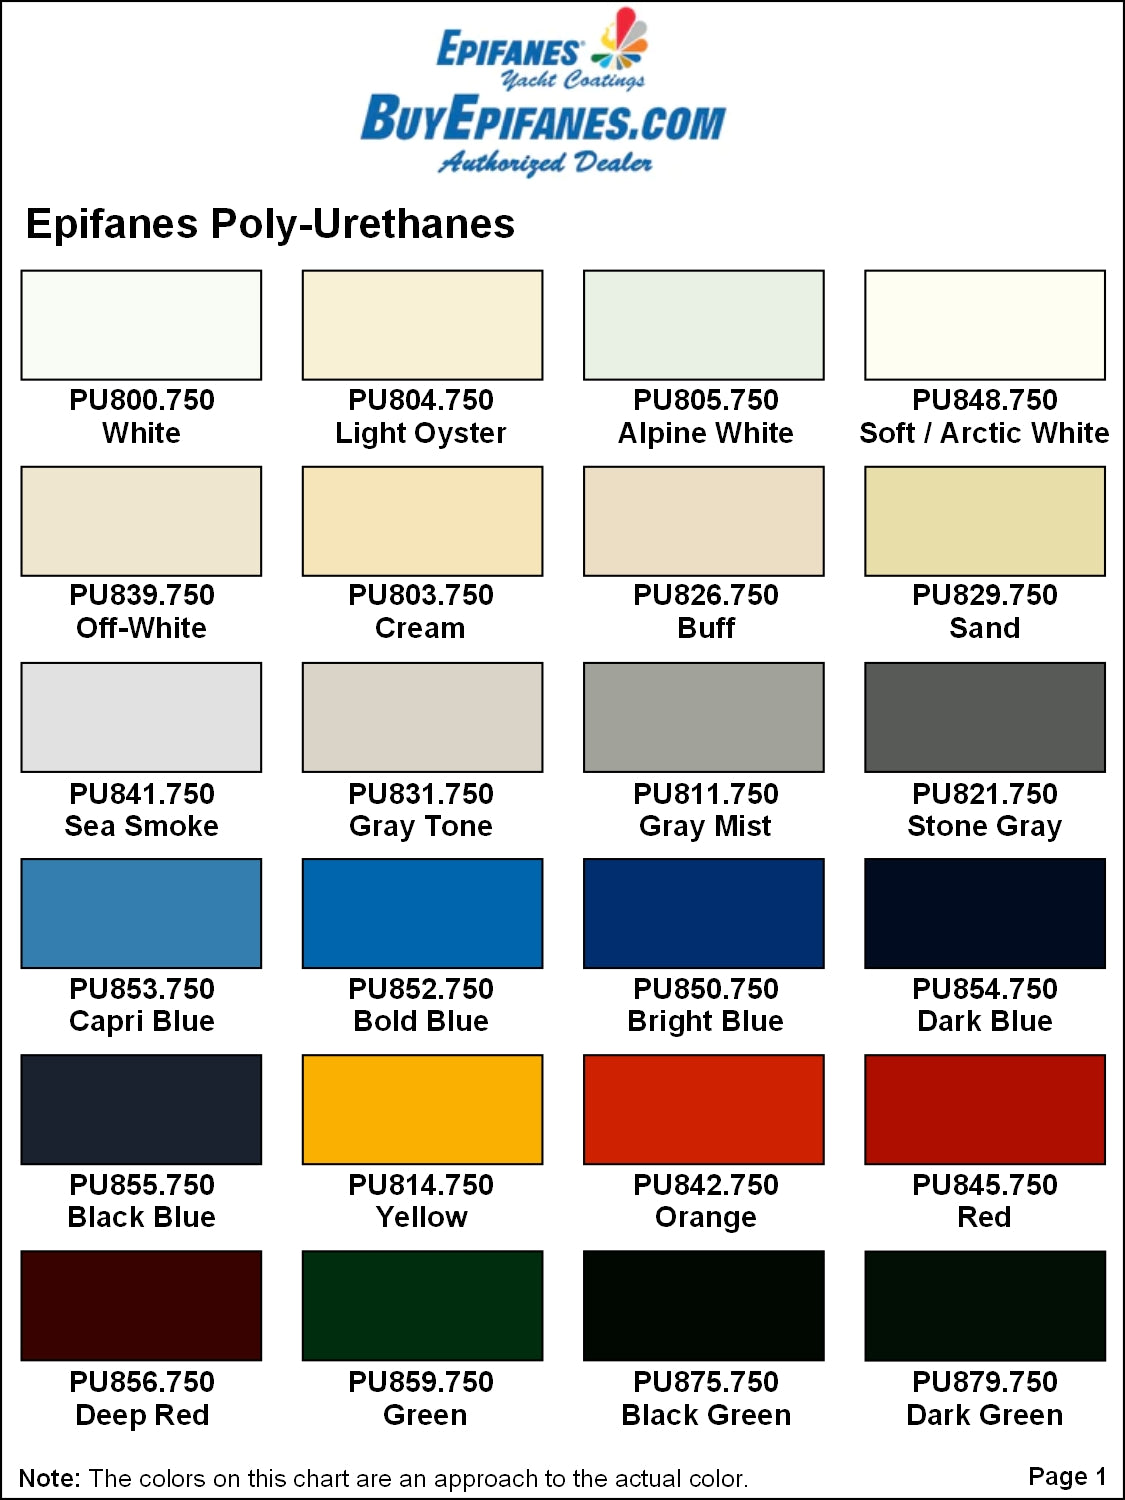 Epifanes Polyurethane Yacht Paint, #821 Stone Gray, PU821.750